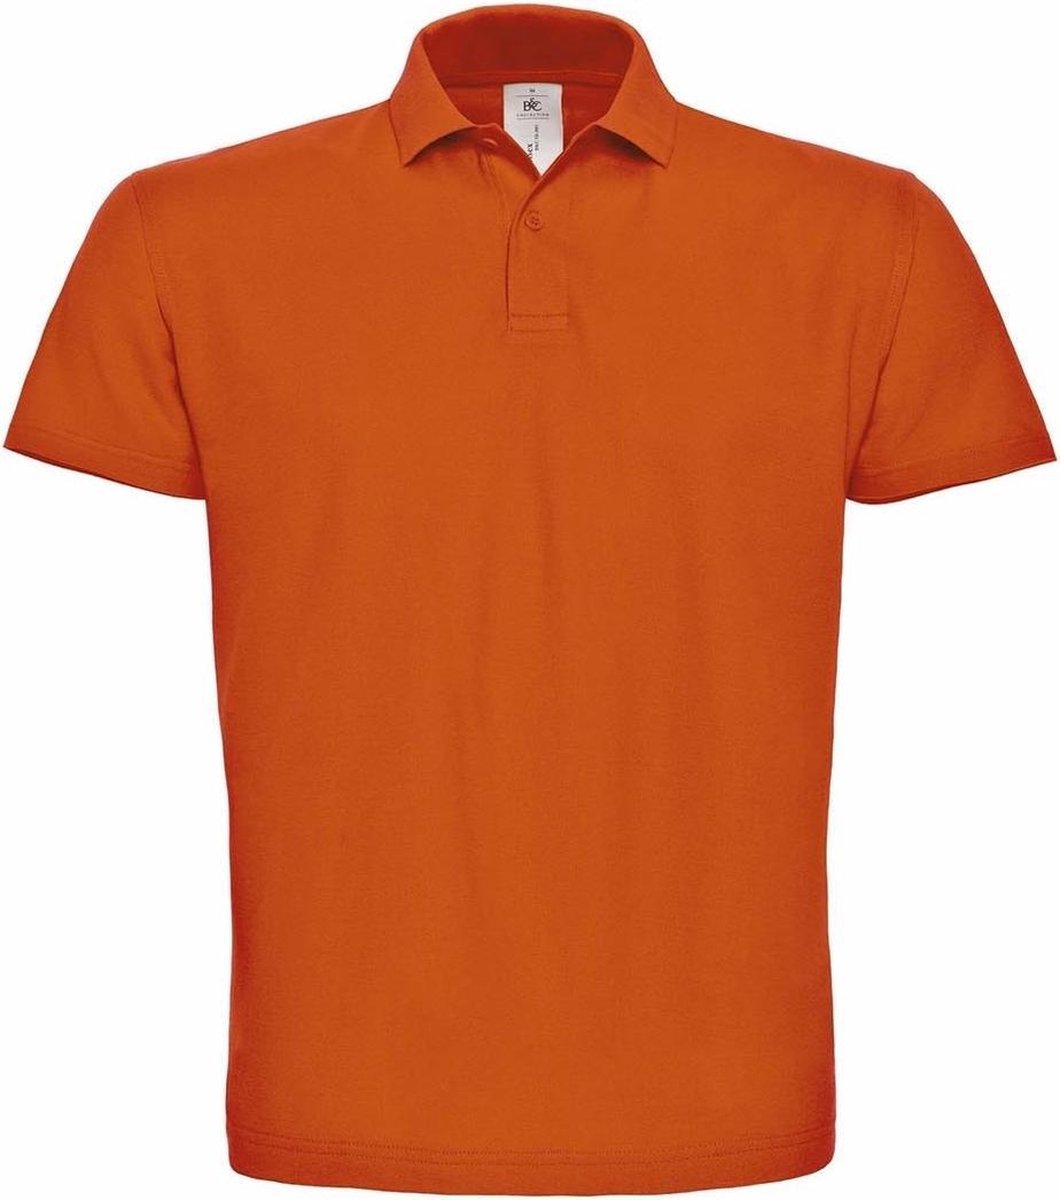 Oranje poloshirt basic van katoen voor heren - grote maten - katoen - 180 grams - polo t-shirts - Koningsdag of EK / WK supporter kleding S (48)